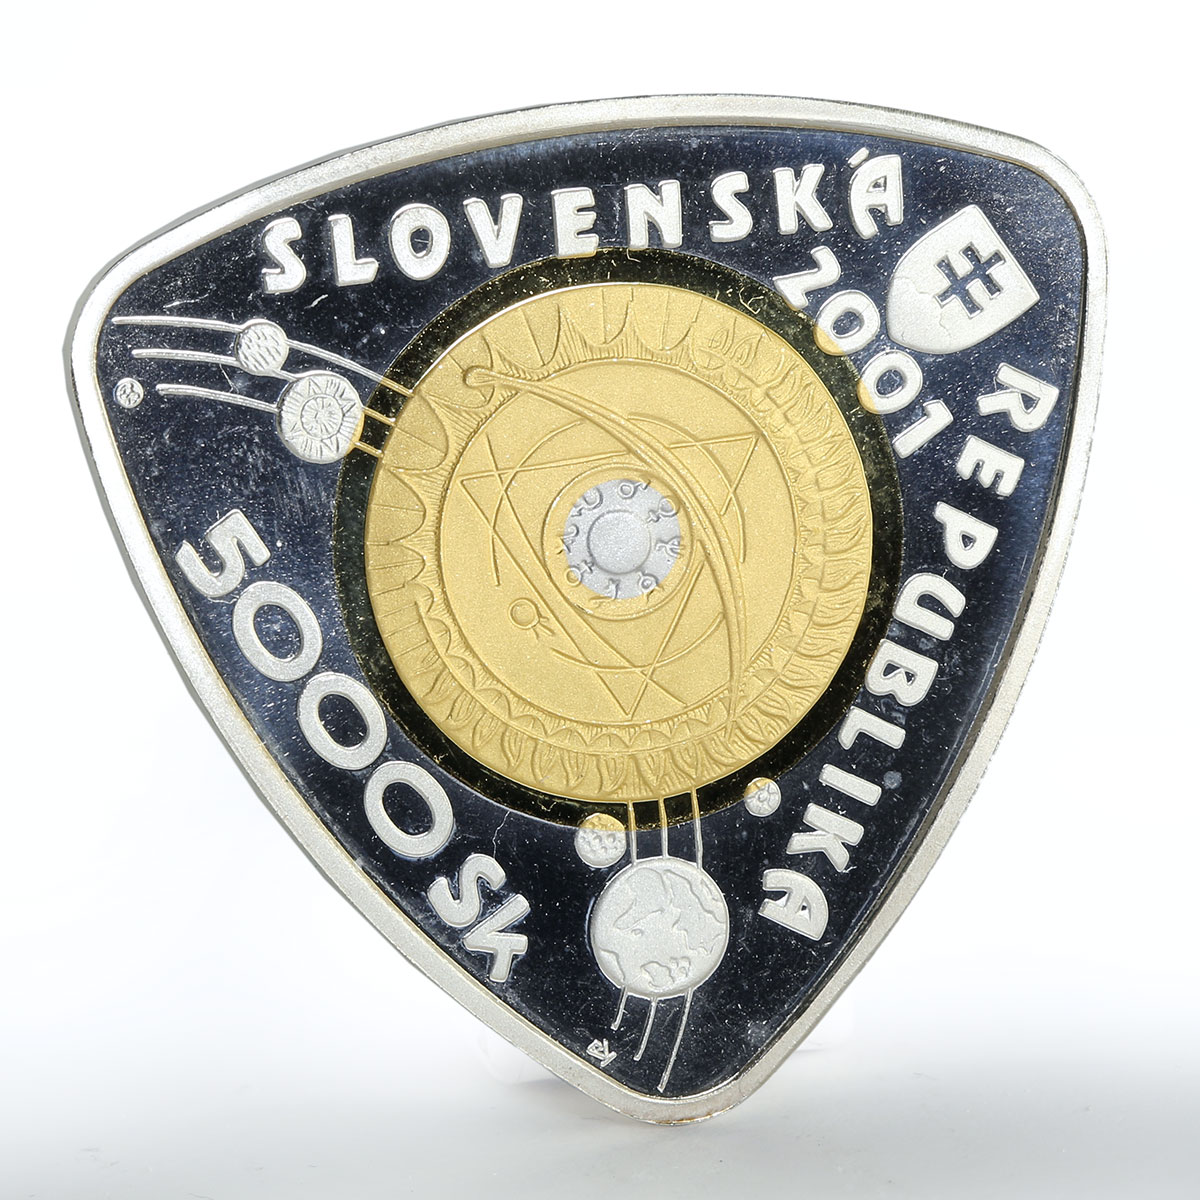 Slovakia 5000 korun Third Millennium proof silver coin 2001